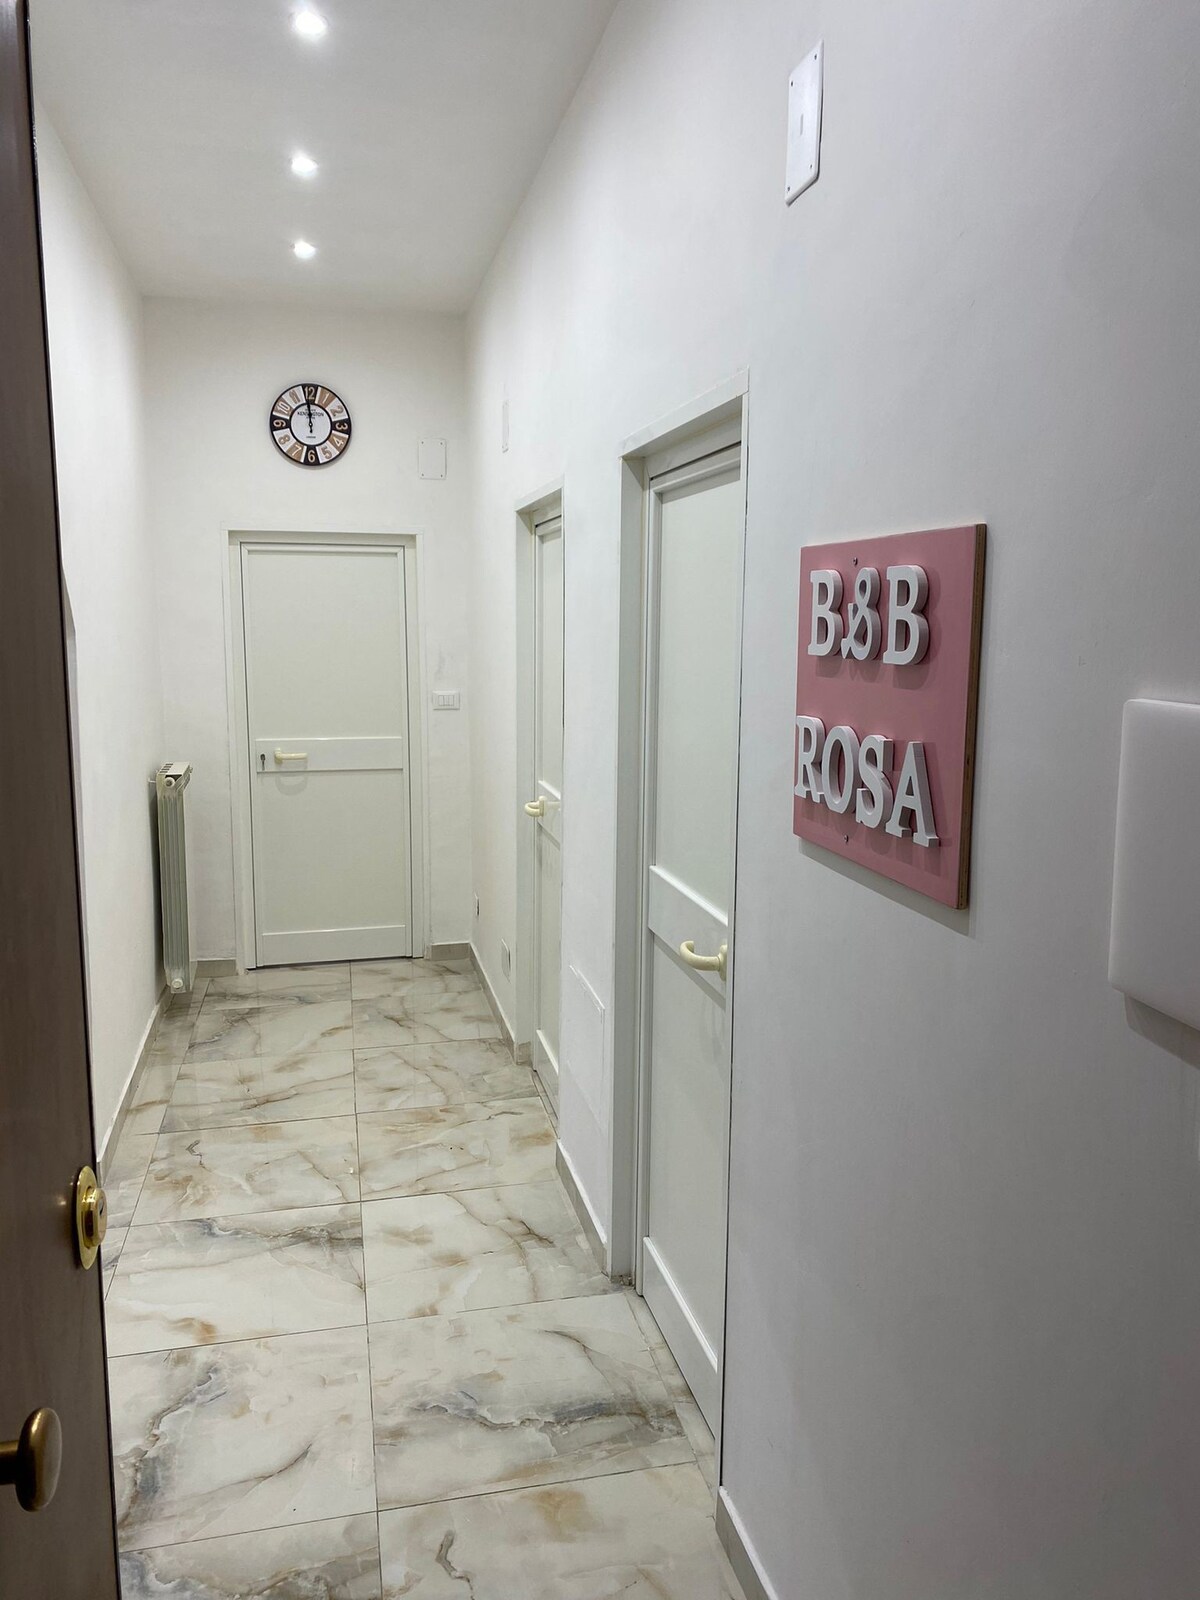 B&B ROSA… intero appartamento